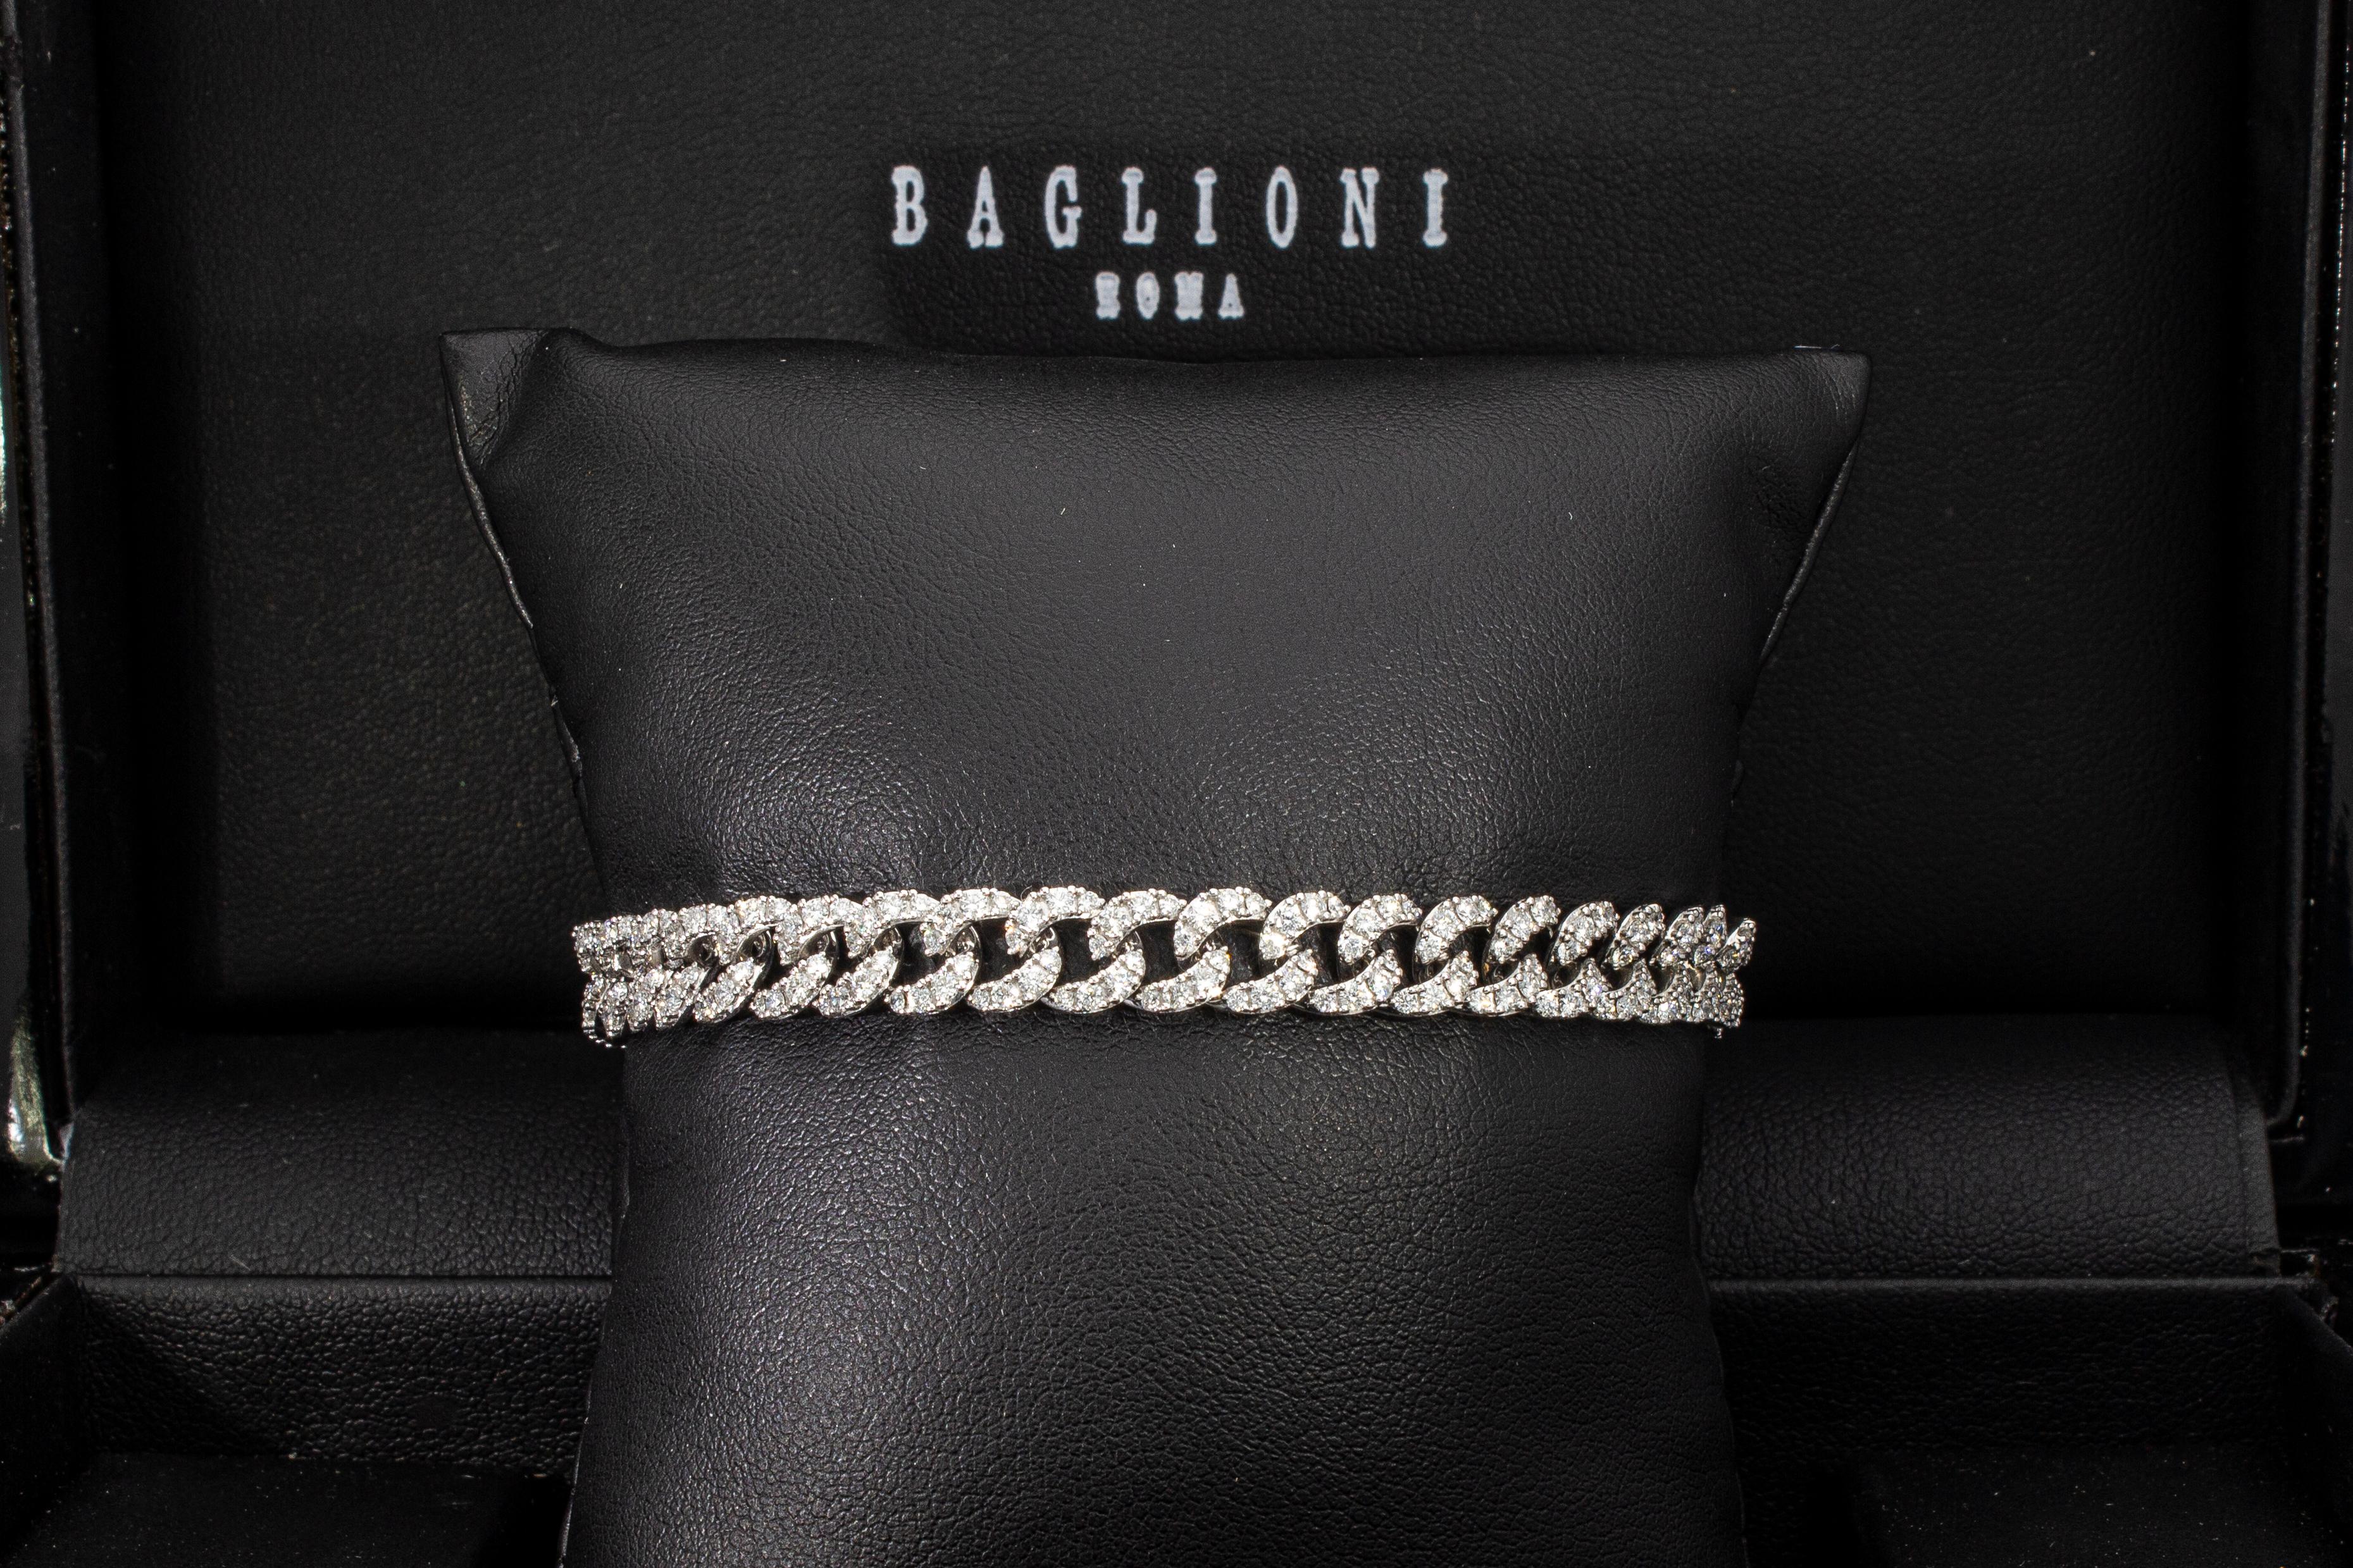 Le bracelet modèle groumette est composé de 40 maillons sertis de 320 diamants, leur poids total en carats est de 3,35 ct.
Le bracelet est doté d'une fermeture invisible avec deux sécurités.
Le bracelet est en or blanc 18 carats.
Poids total en